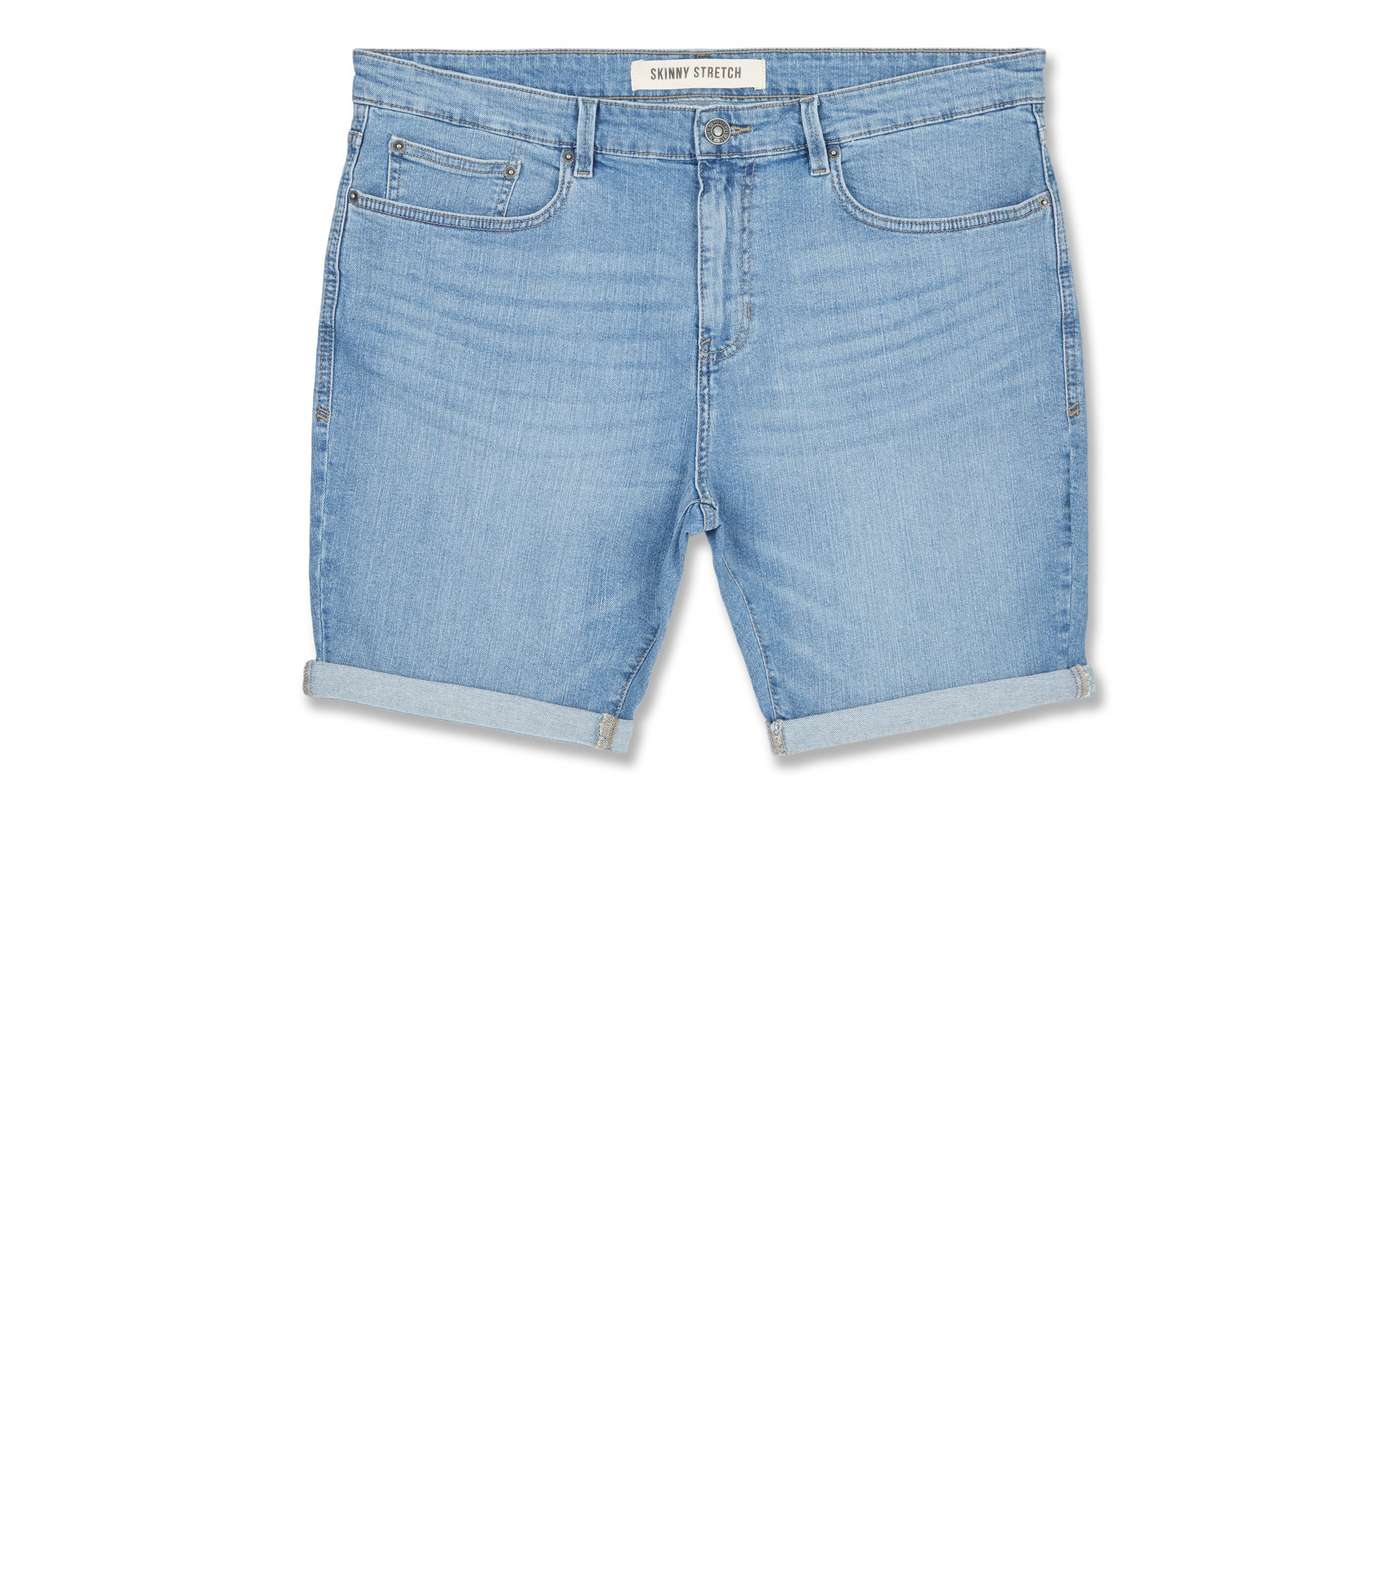 Plus Size Pale Blue Denim Shorts